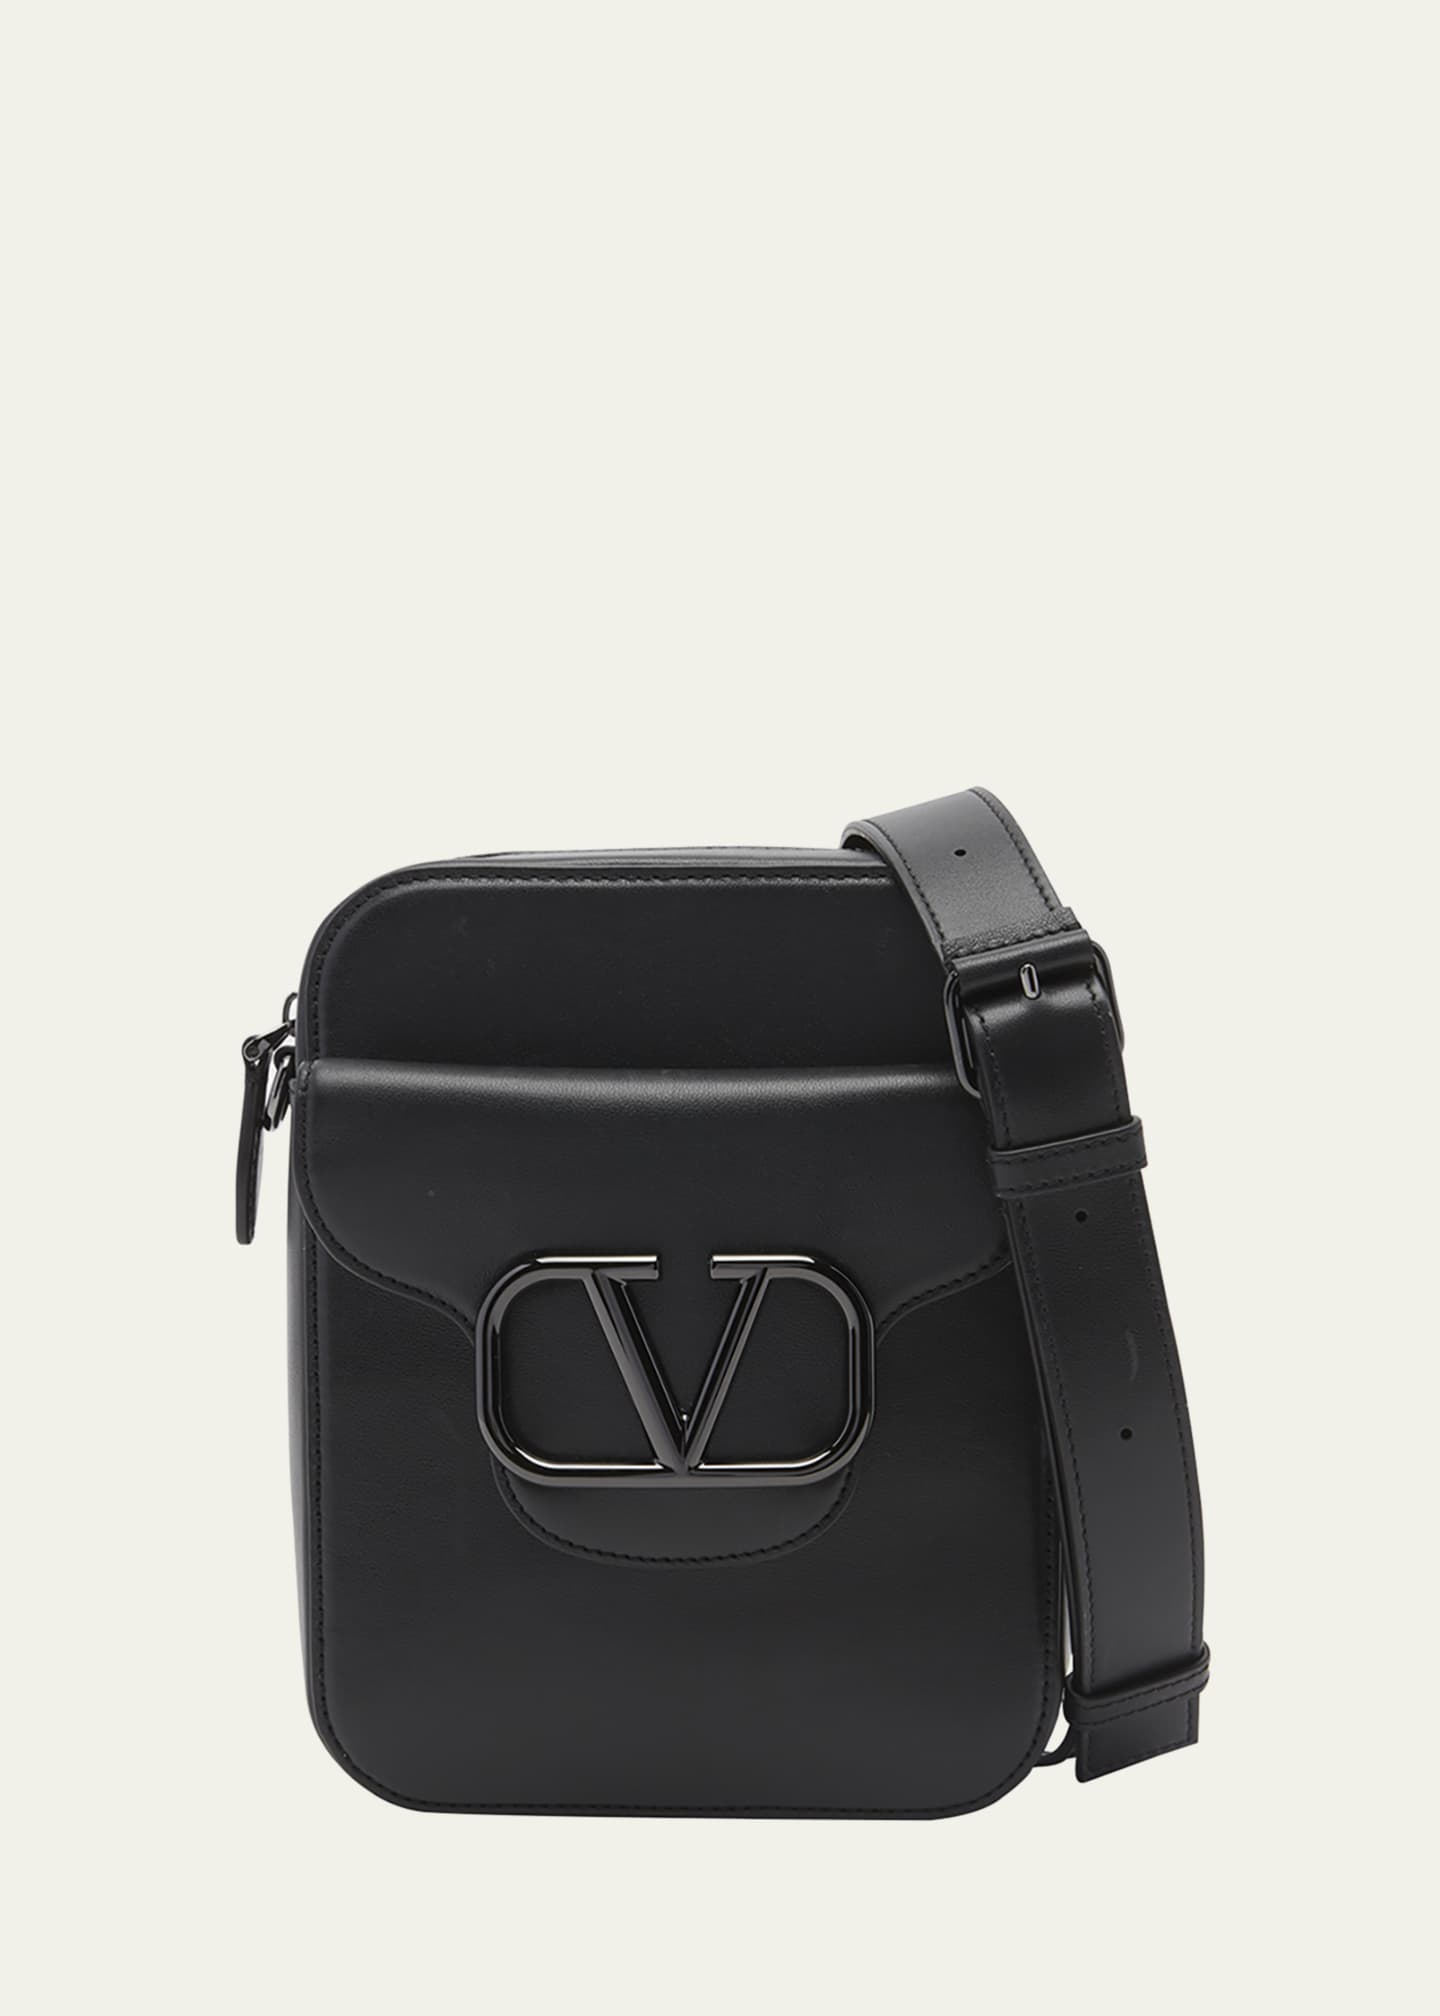 Valentino Men's Loco Monochrome Small Crossbody Bag